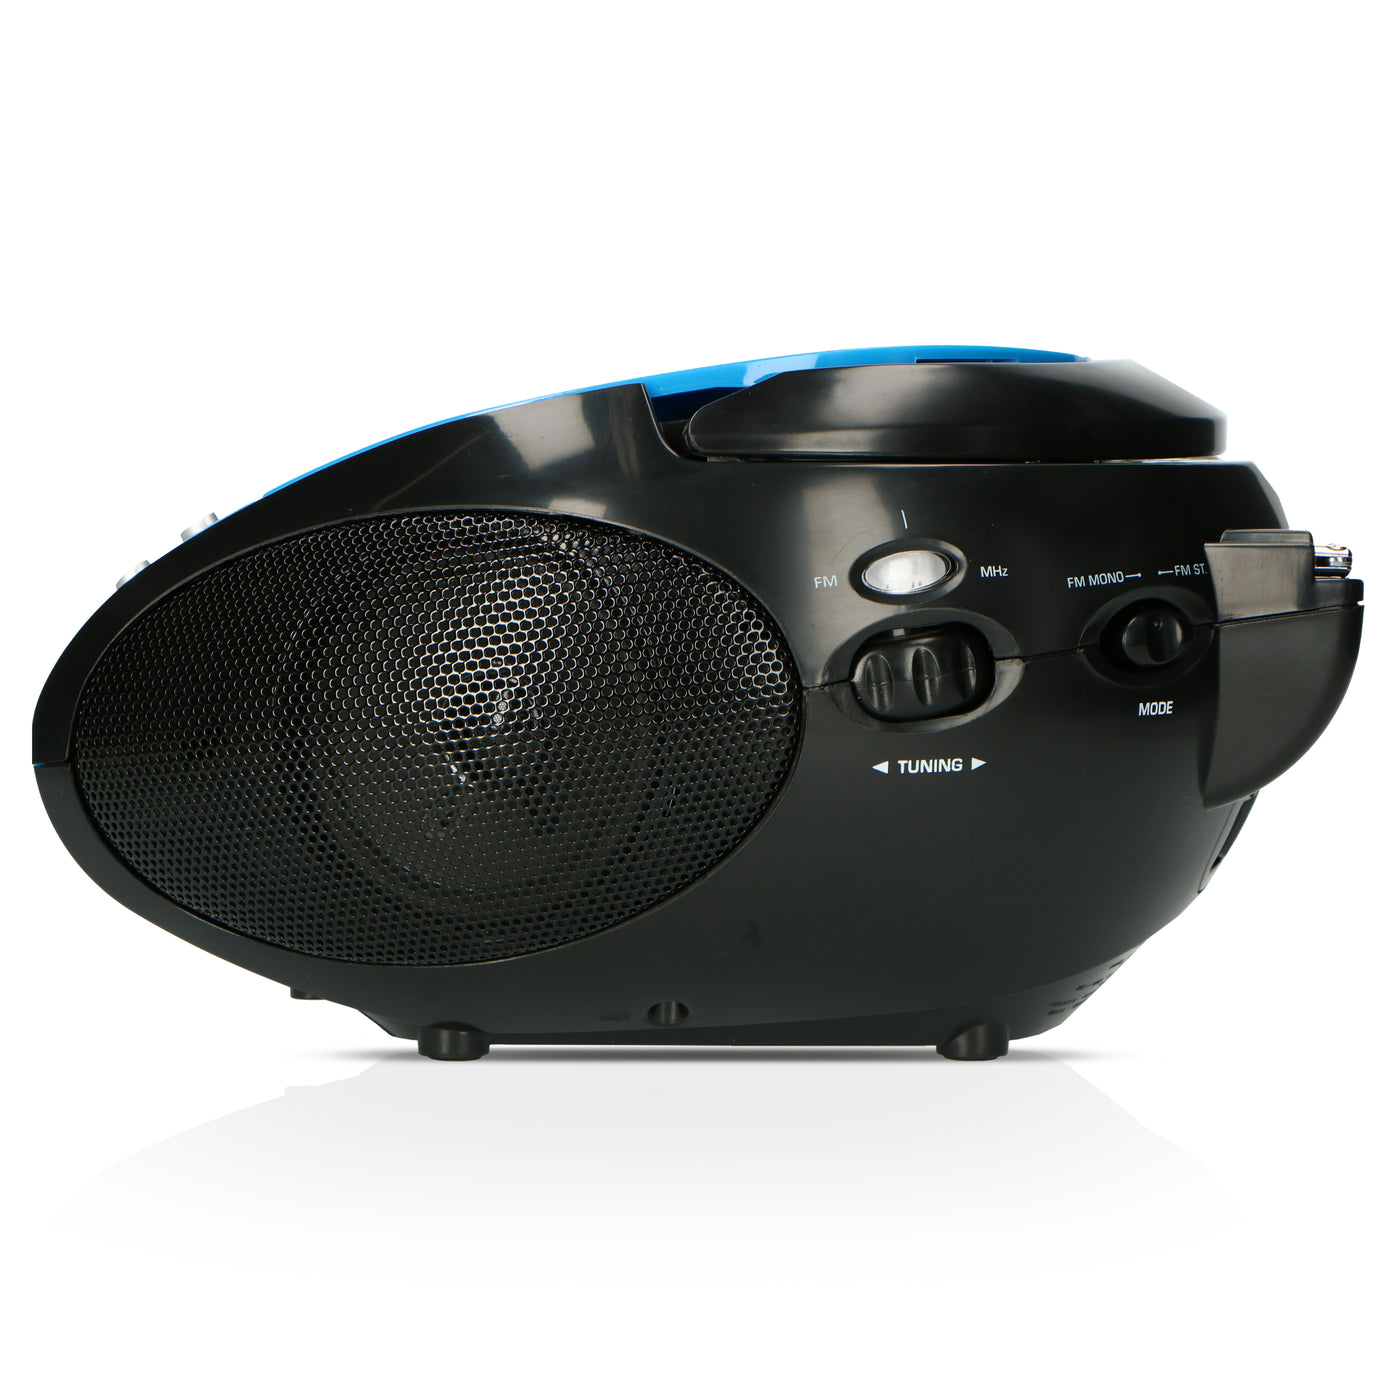 LENCO SCD-24 Blue/Black Blue/Black - Draagbare stereo FM radio met CD-speler - Blauw/zwart